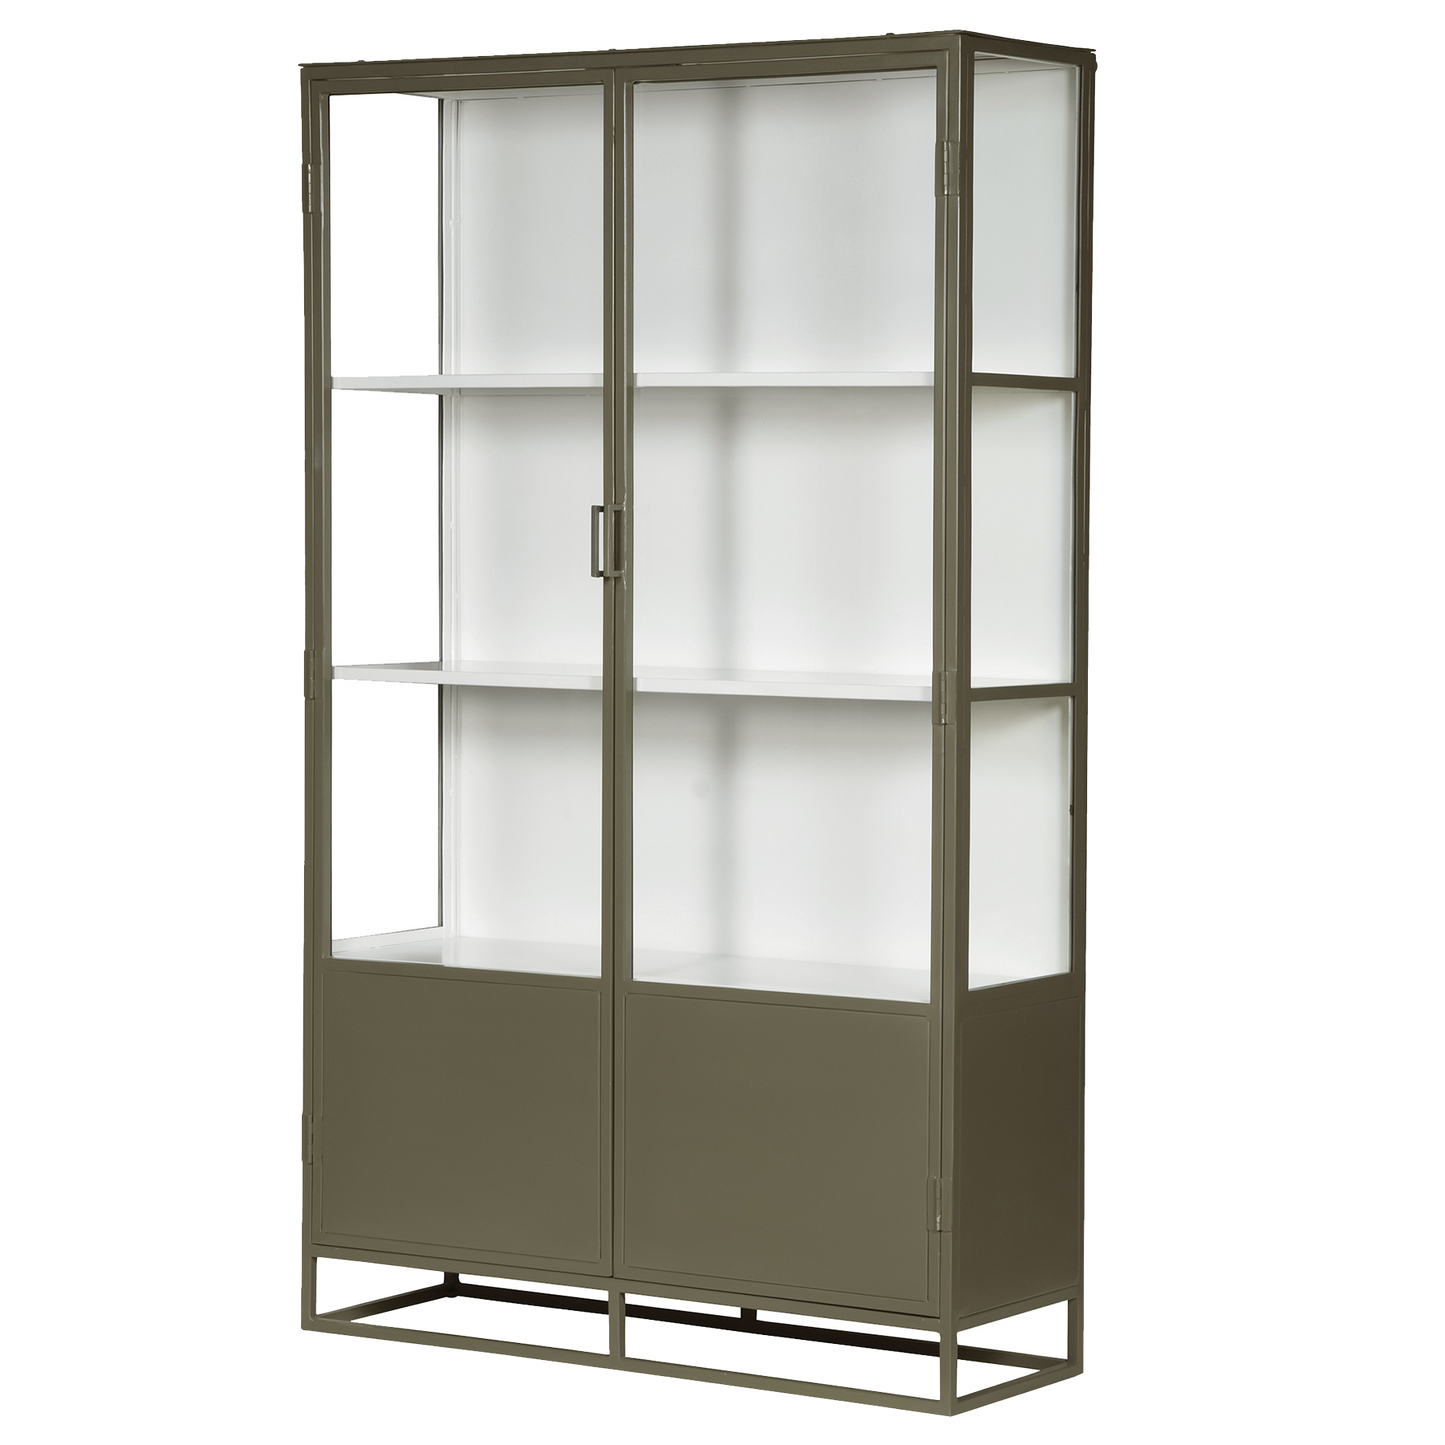 Metal double door glass cabinet 200cm olive